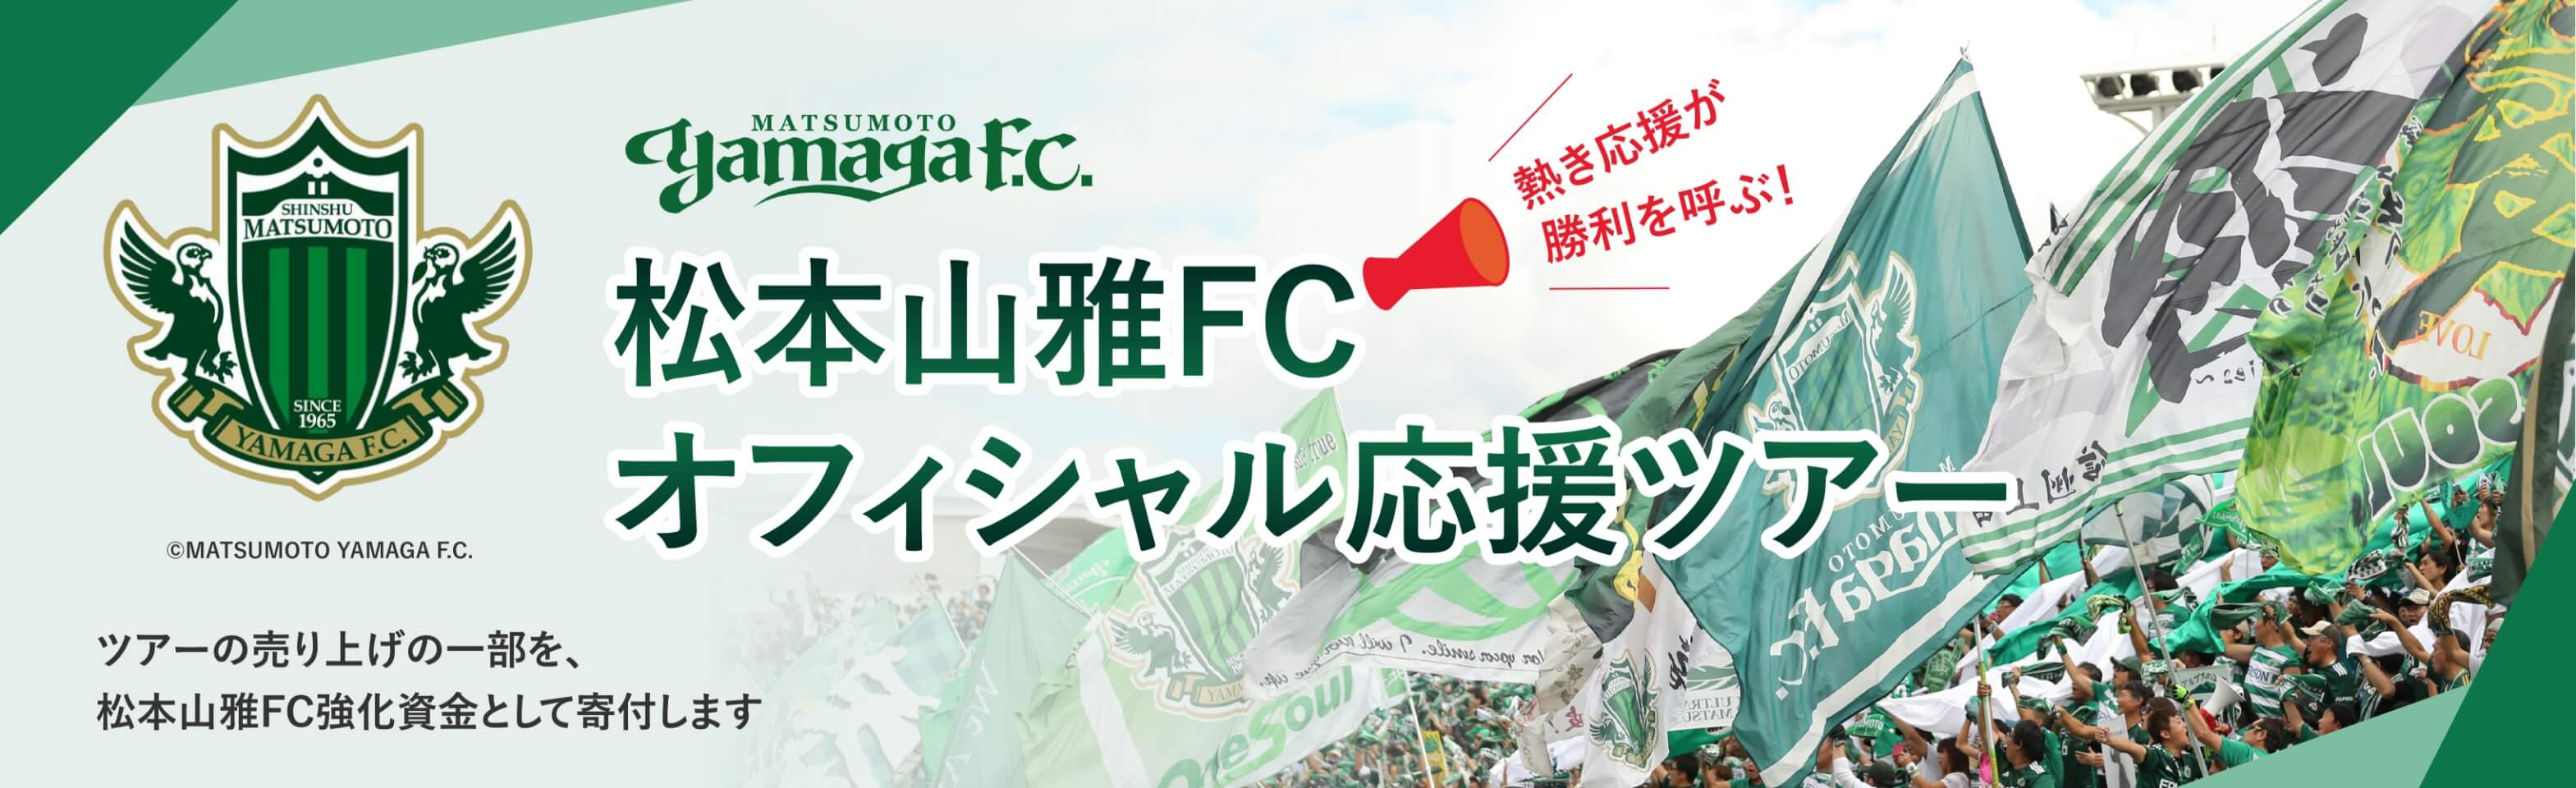 松本山雅FCオフィシャル応援ツアー